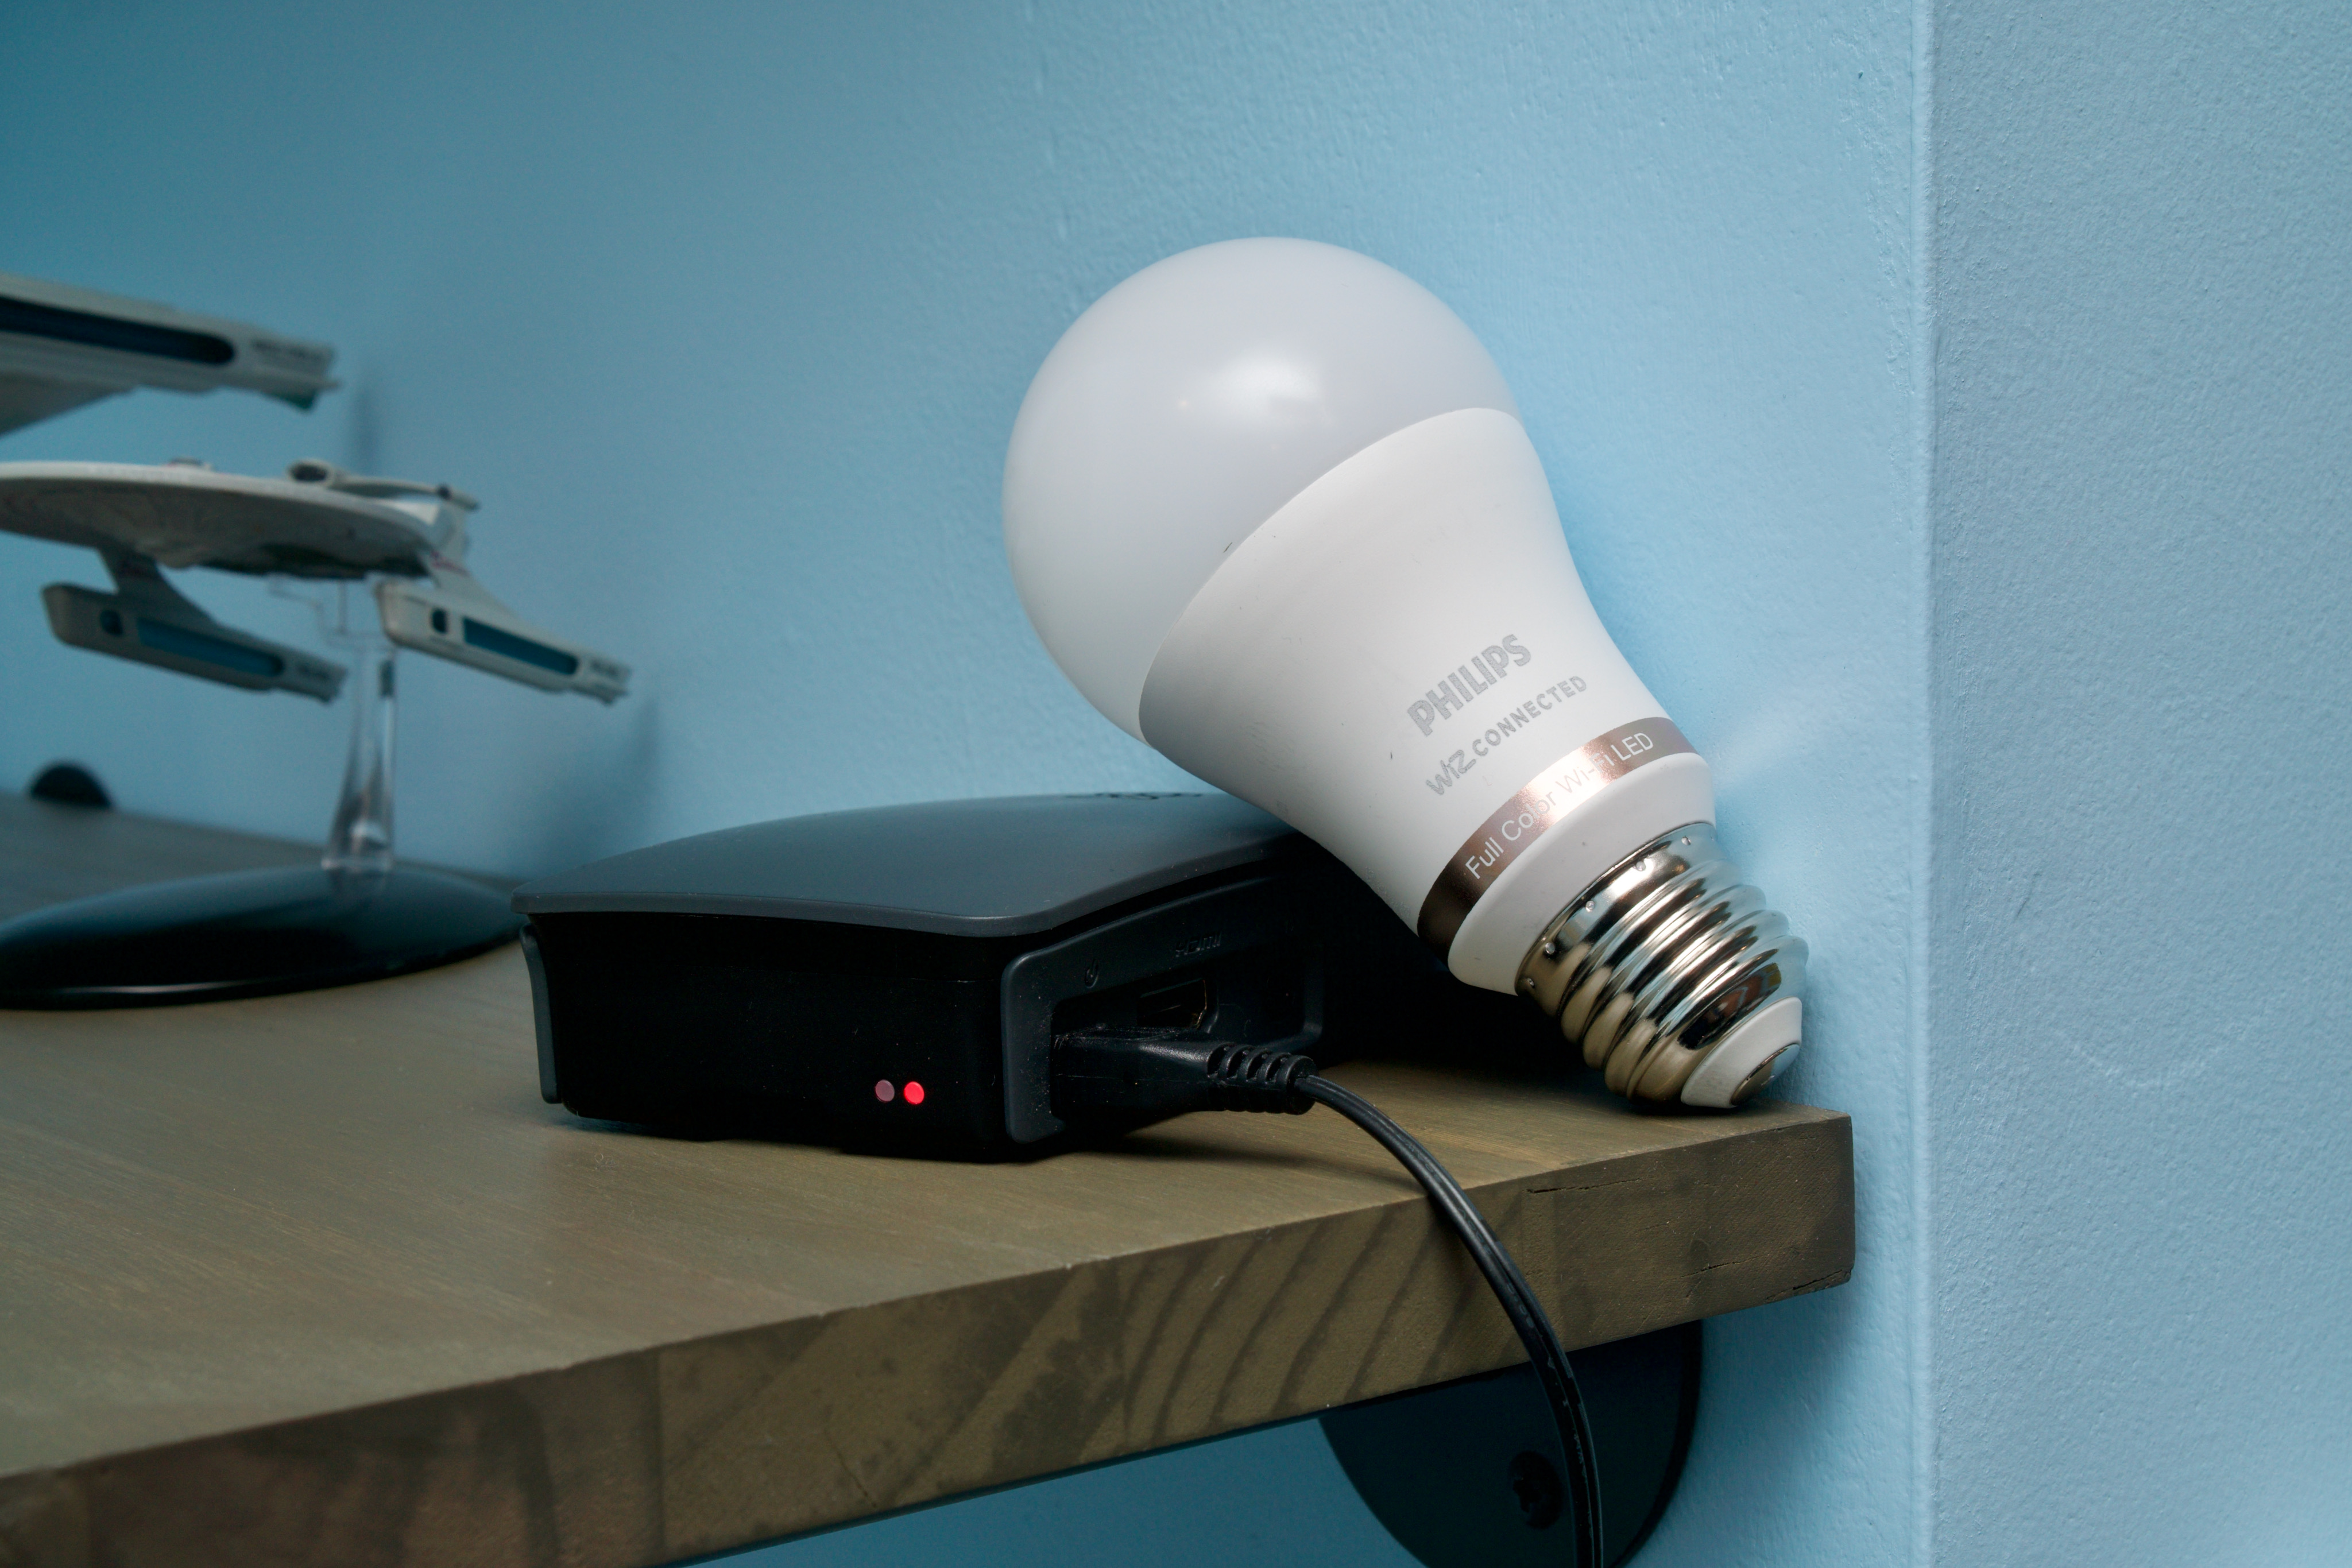 Basics Light Bulb Setup with the Alexa App. EASY STEP-BY-STEP. 